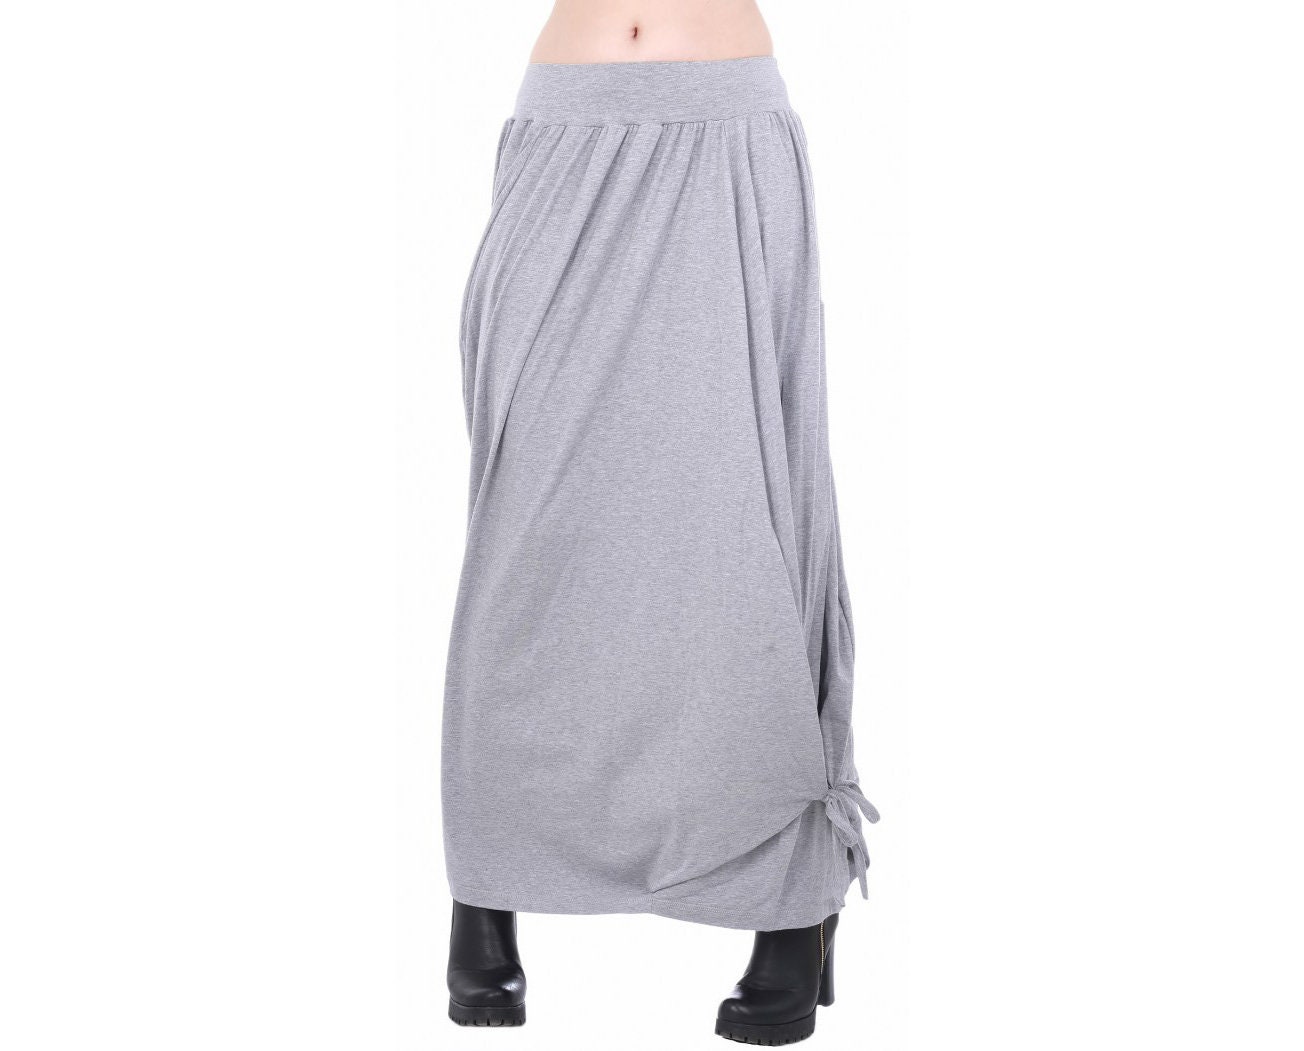 Long Gray Skirt Caftan Skirt Loose Gray Skirt Tent Skirt | Etsy